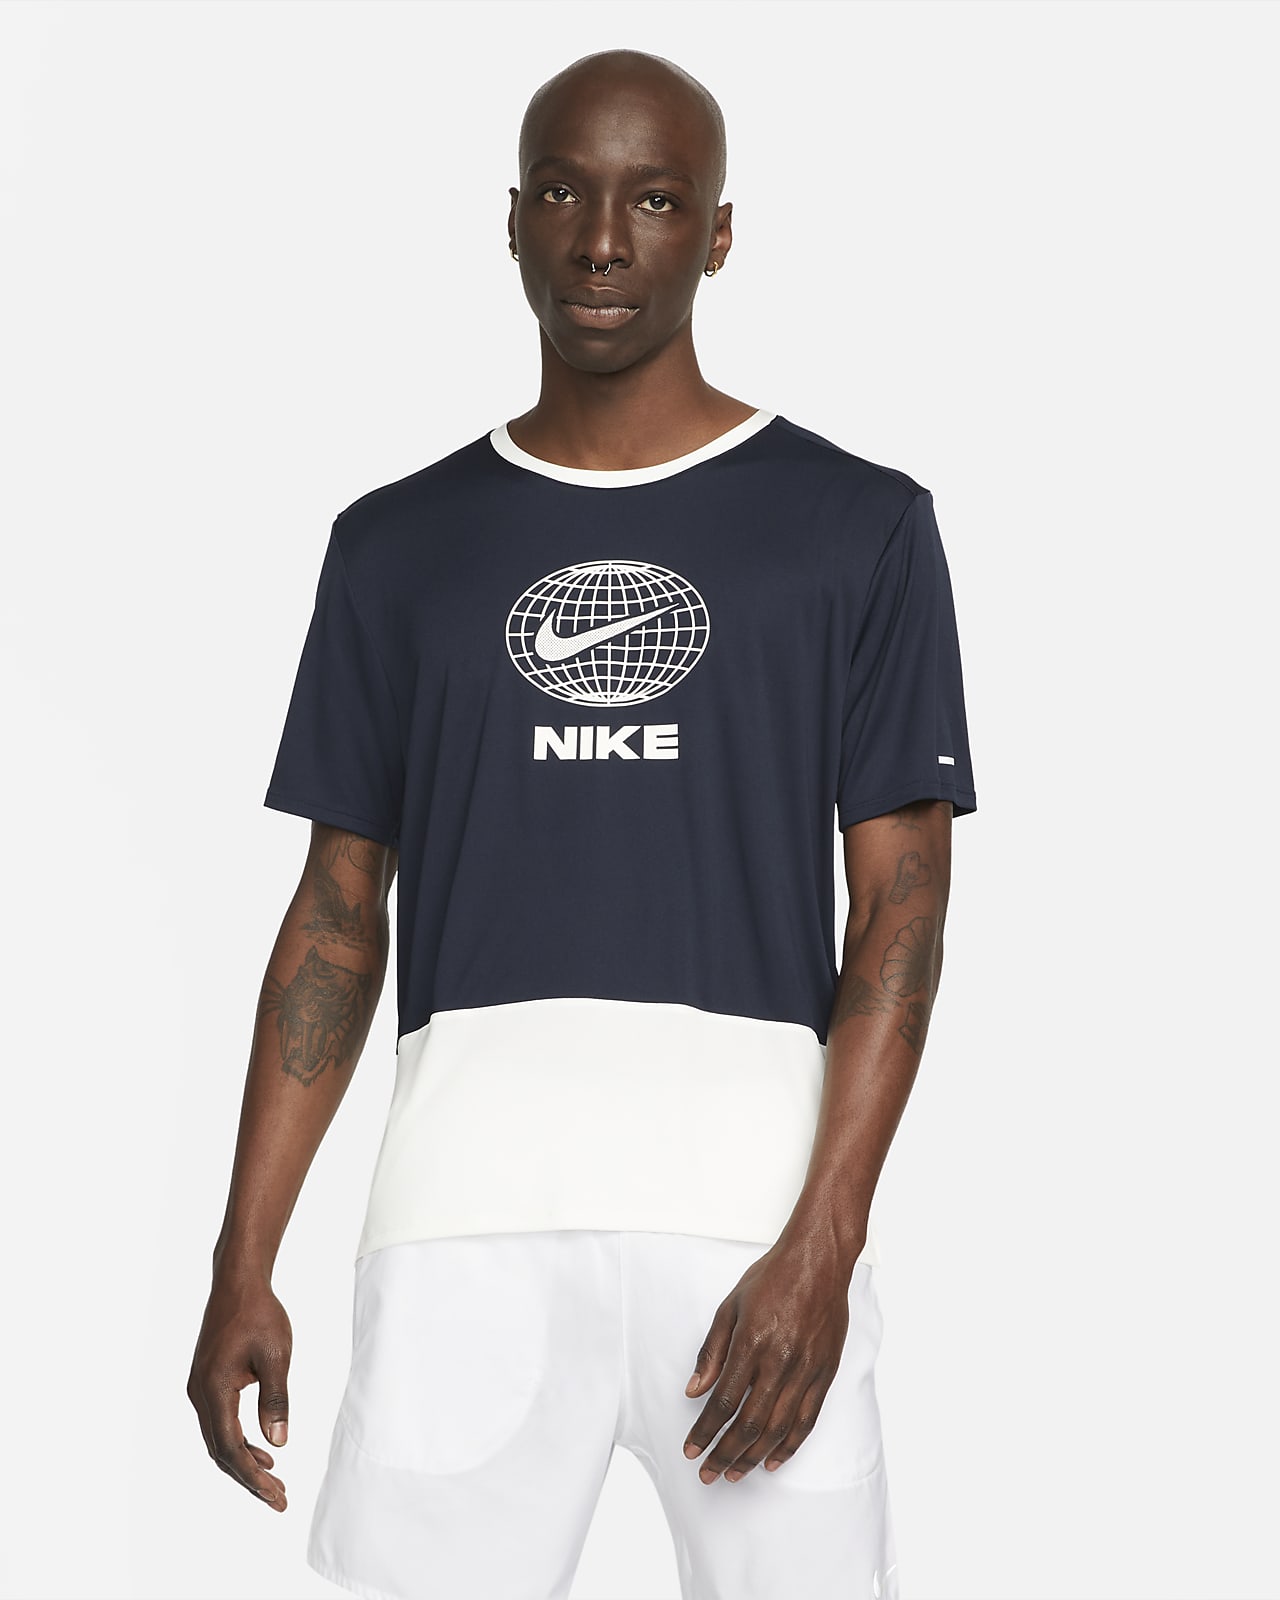 Nike Dri-FIT Heritage rövid ujjú férfi futófelső